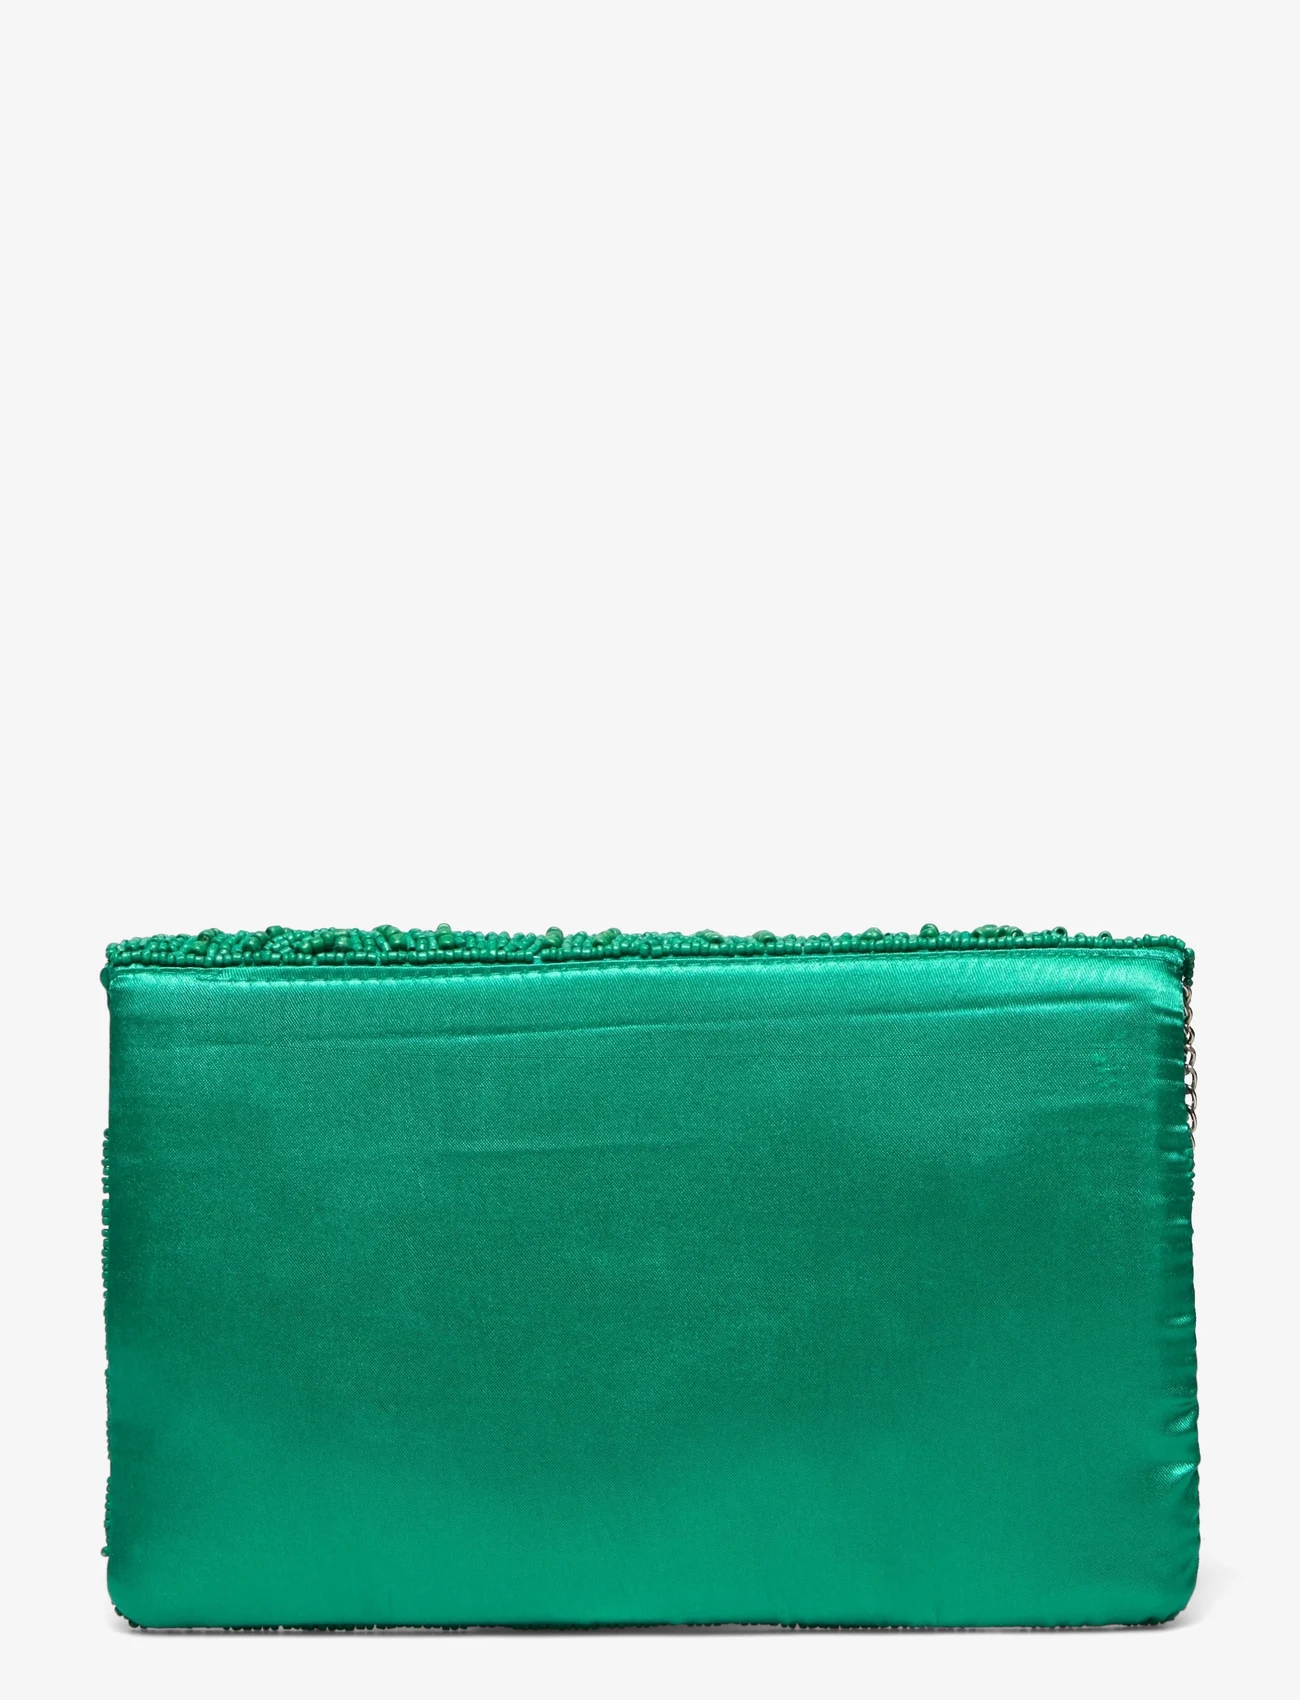 Pipol's Bazaar - Casablanca Green Clutch Bag - feestelijke kleding voor outlet-prijzen - green - 1